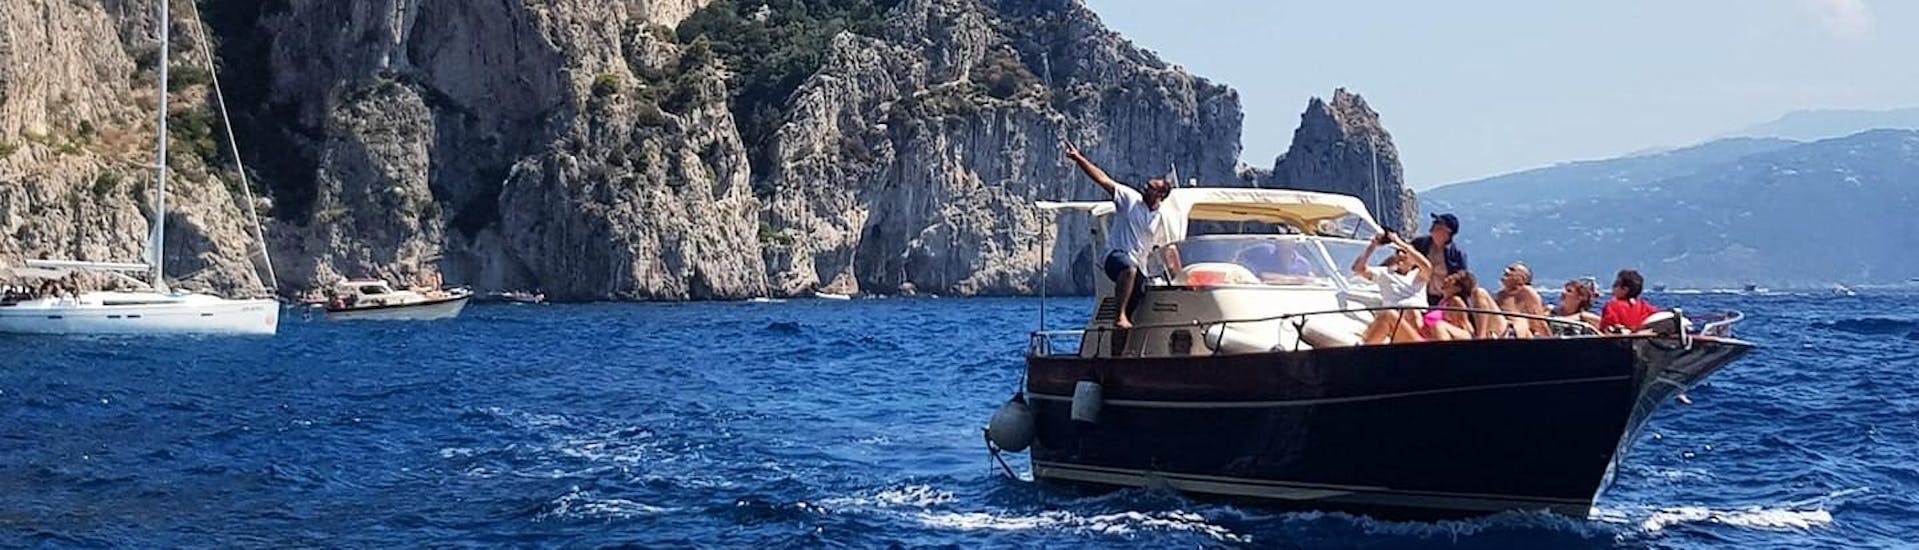 Bootstour von Sorrent nach Positano und Amalfi.